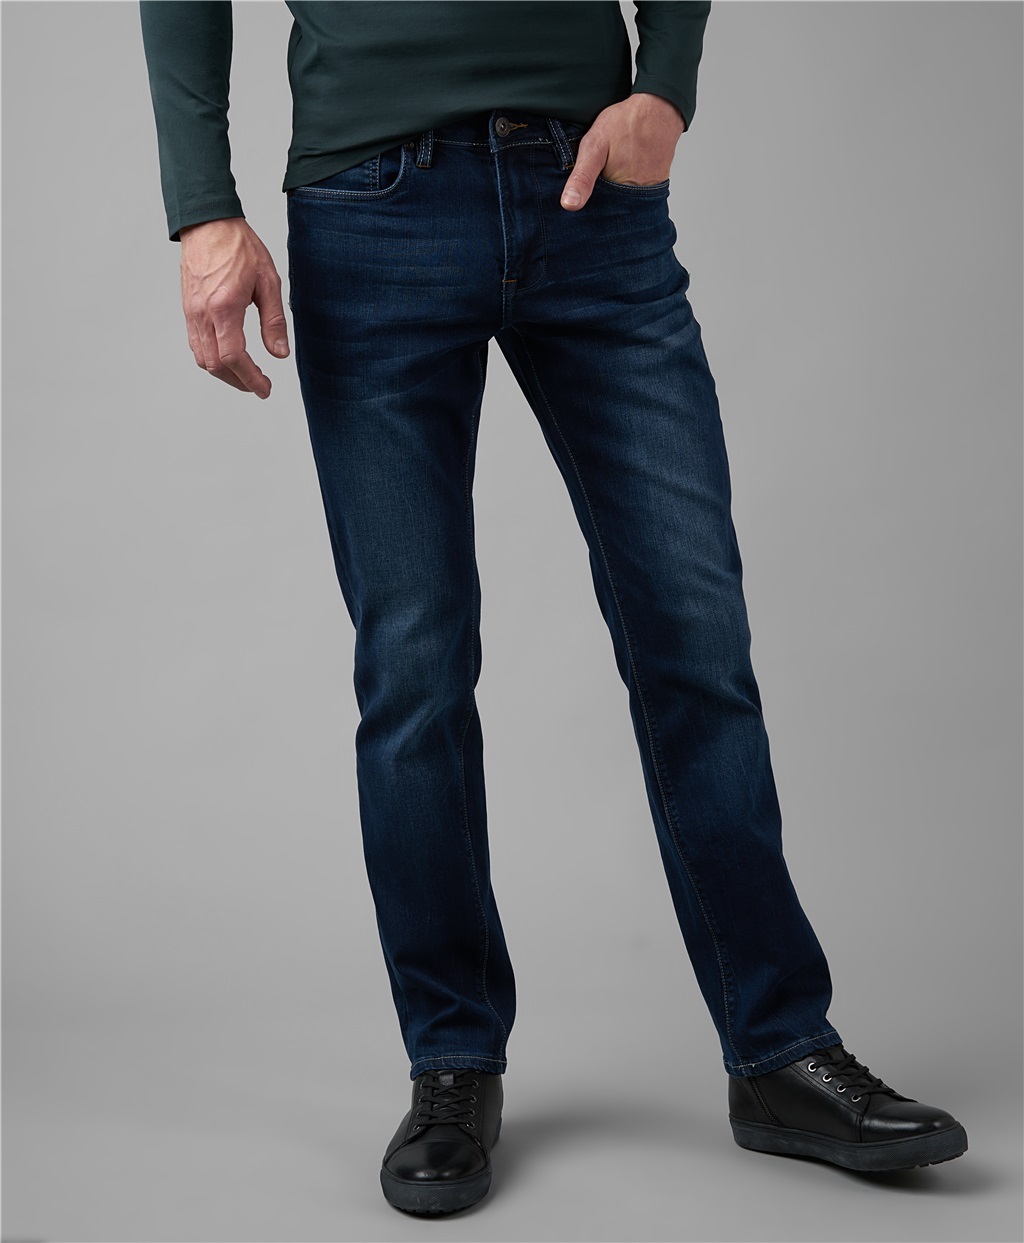 Мужские джинсы распродажа. Джинсы Хендерсон мужские. Джинсы мужские классические. Темно синие джинсы мужские. Тёмно синие джинсы мужские.